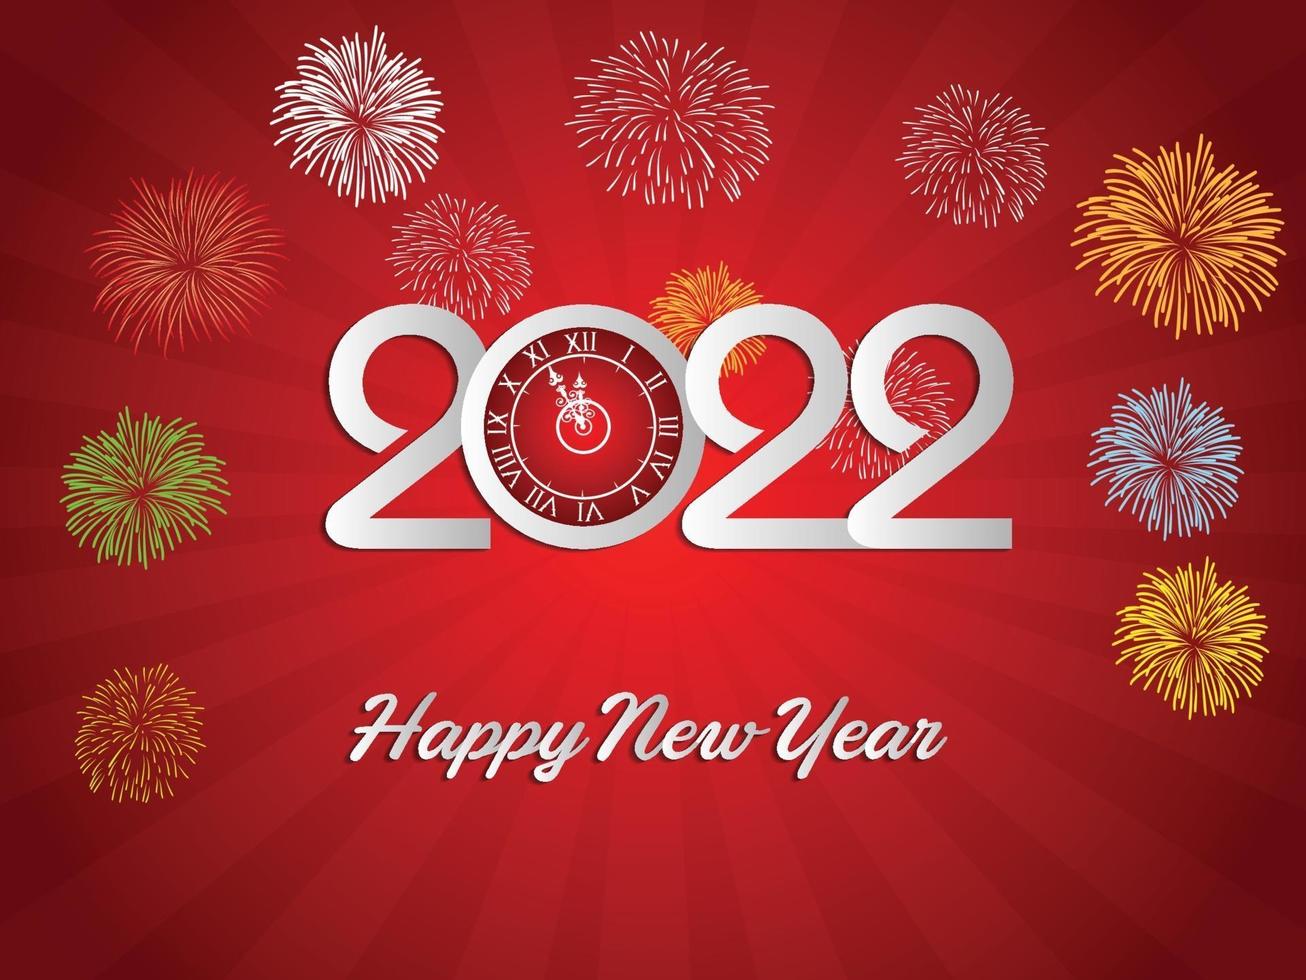 felice anno nuovo 2022 con sfondi di fuochi d'artificio vettore